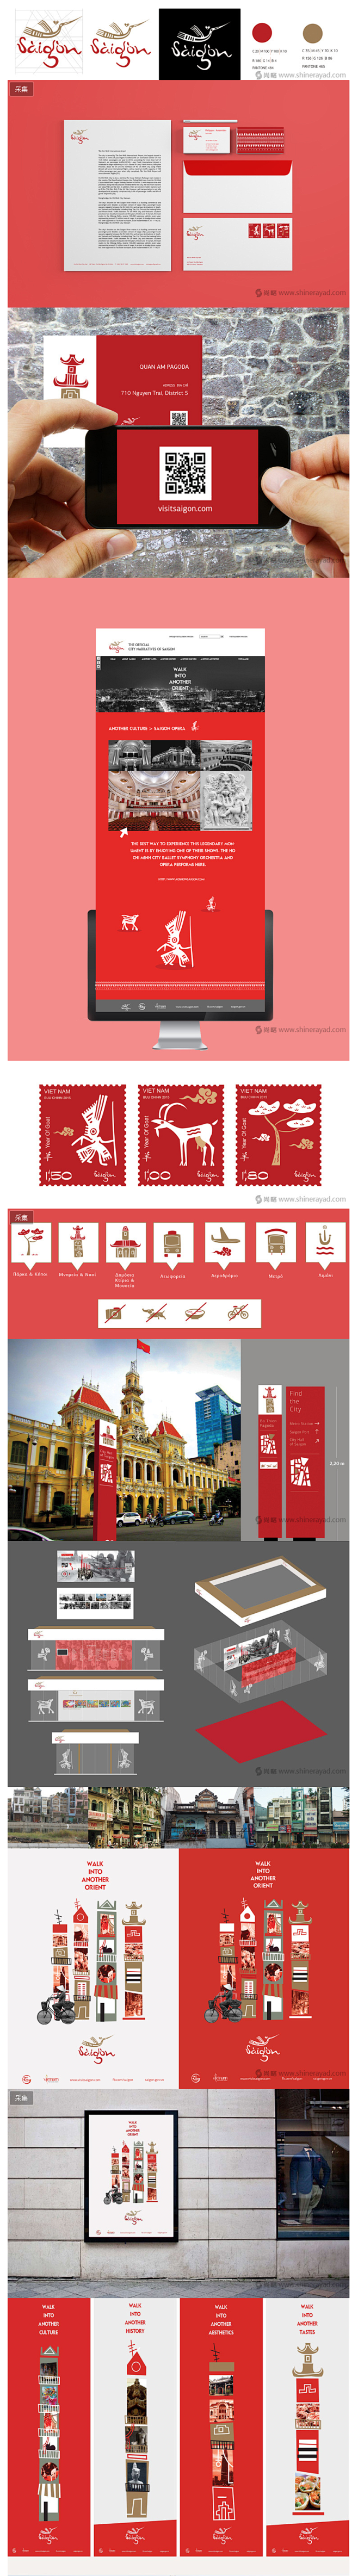 西贡城市旅游品牌形象设计LOGO设计VI...